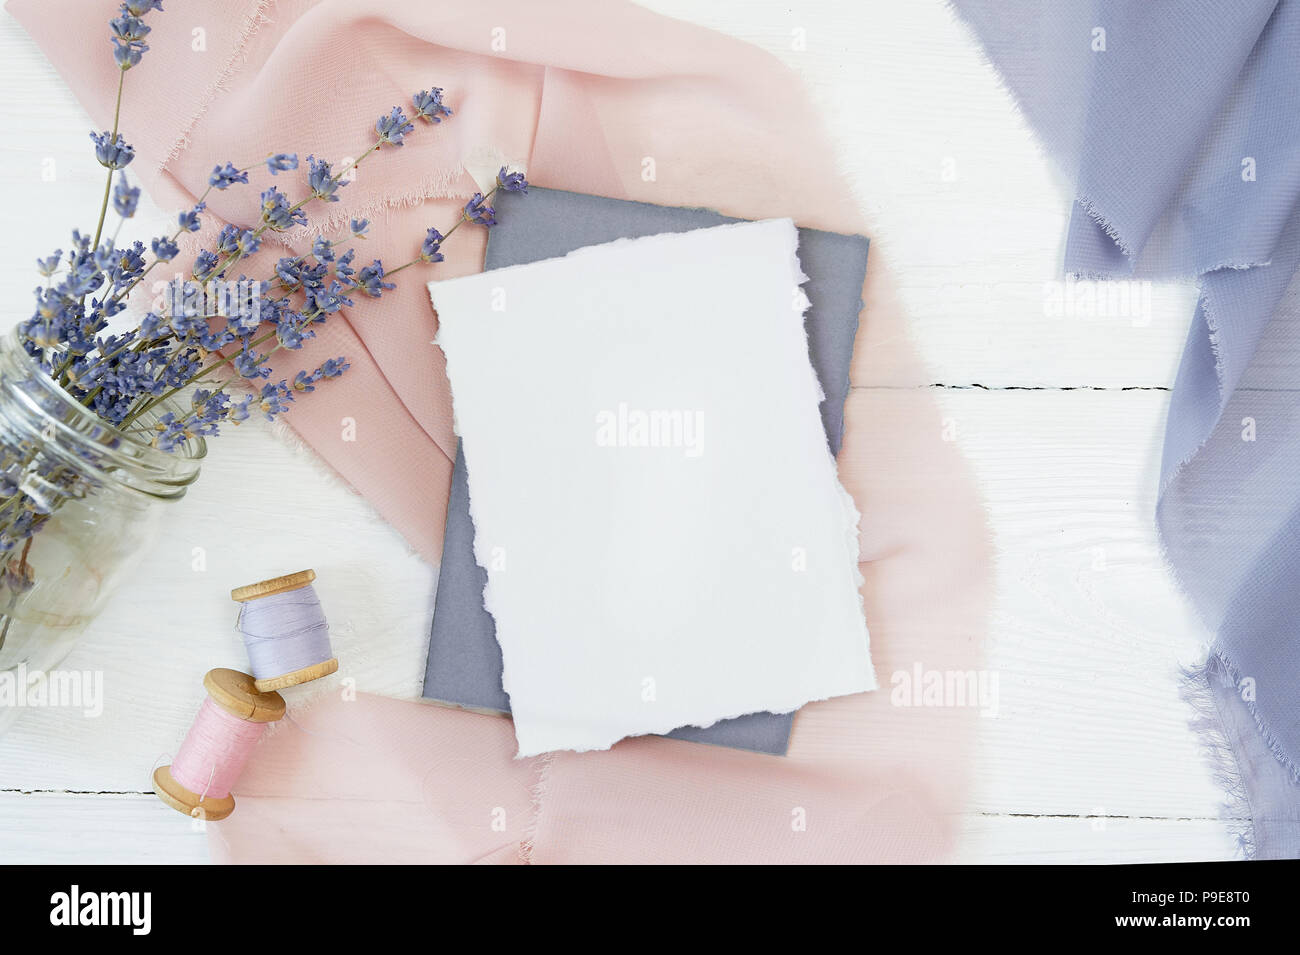 Carte vierge blanc sur fond de tissu bleu et rose avec des fleurs de lavande sur un fond blanc. Immersive avec enveloppe et carte vierge. Mise à plat. Vue d'en haut Banque D'Images